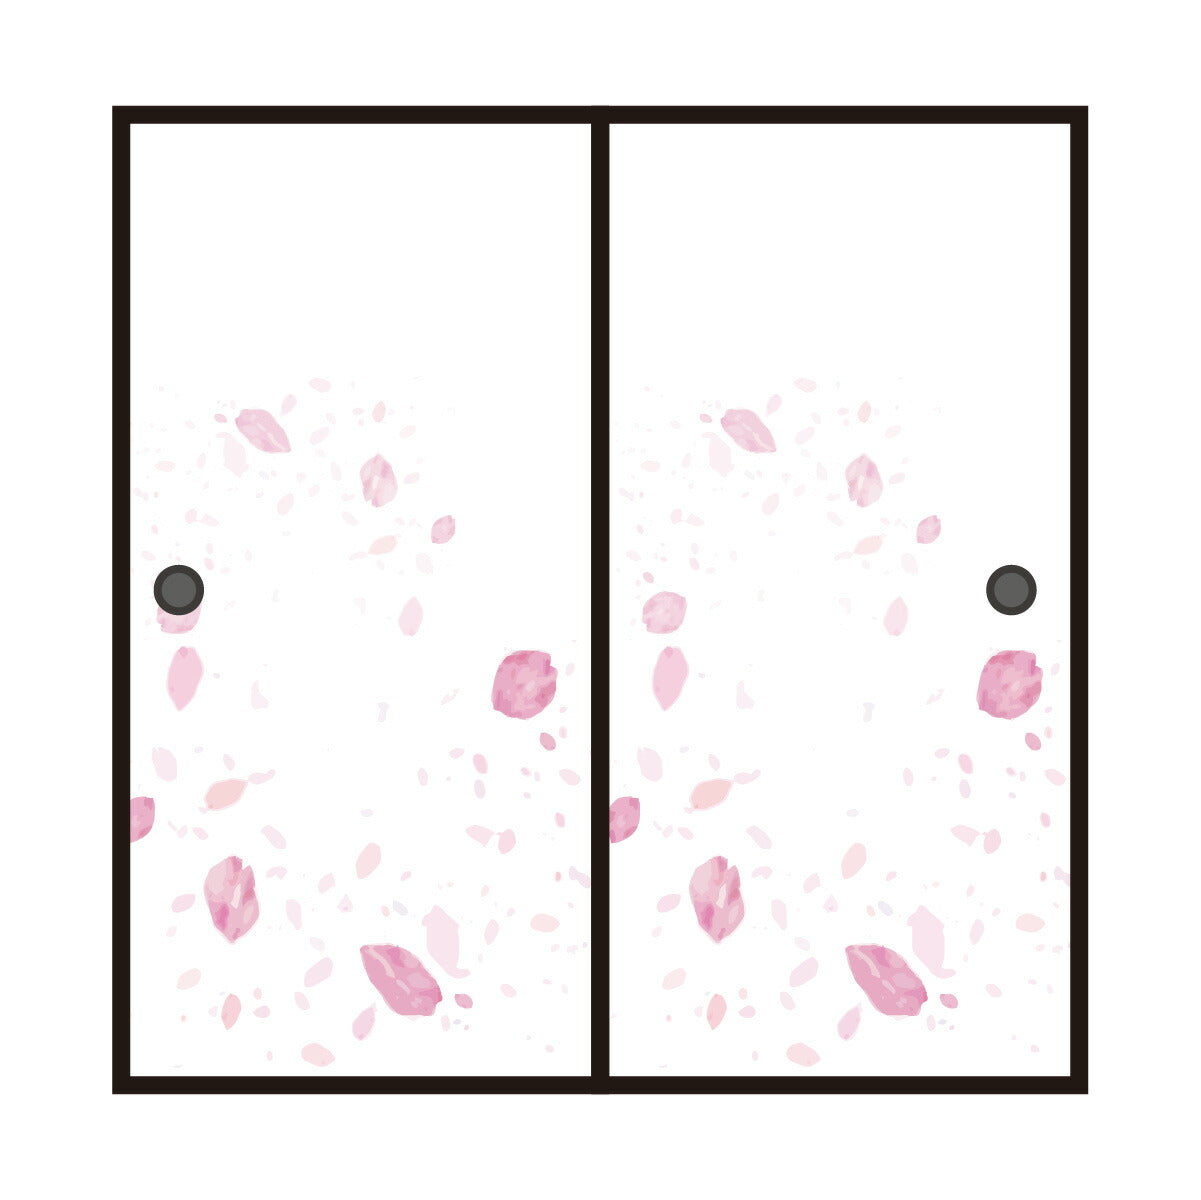 四季の草花ふすま紙 桜 FL_01F 水で貼るタイプ 幅90cm×長さ180cm 1枚入り 襖紙 アサヒペン